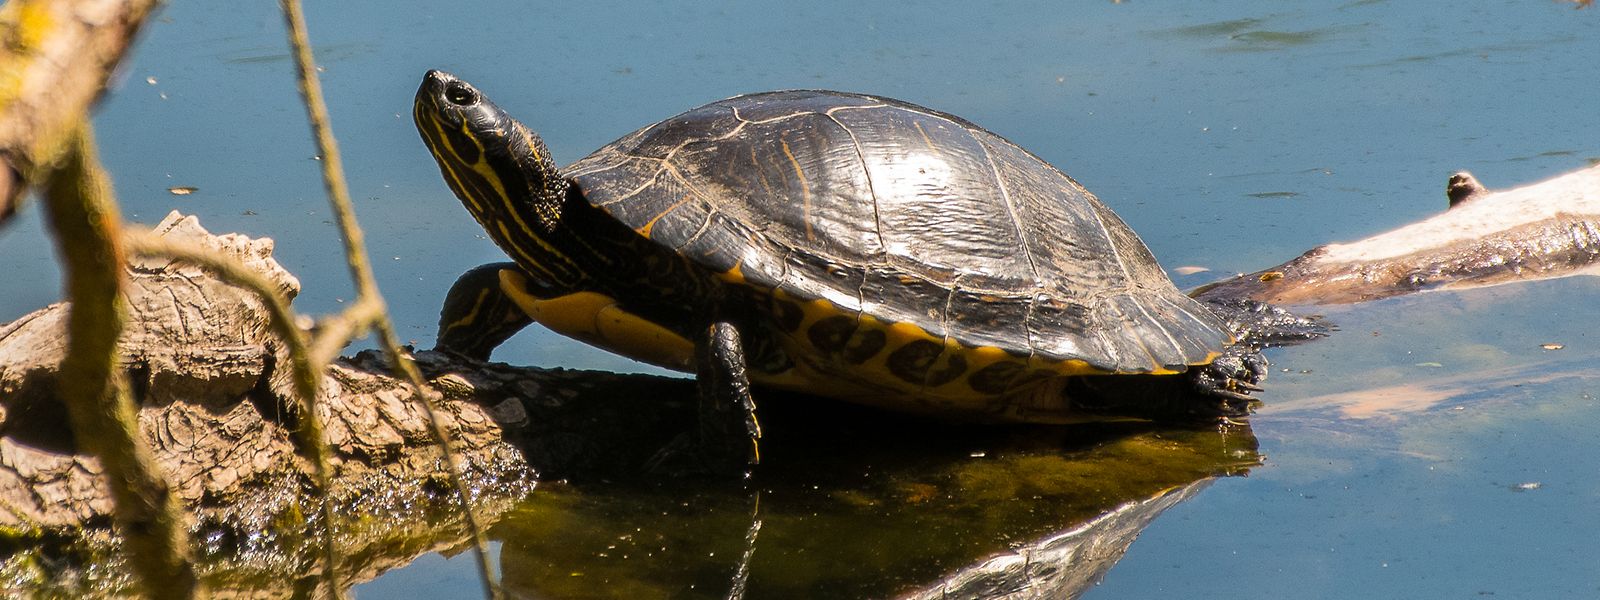 Sie sind schön anzusehen, schaden aber der einheimischen Tierwelt: Schmuckschildkröte am Haff Réimech.